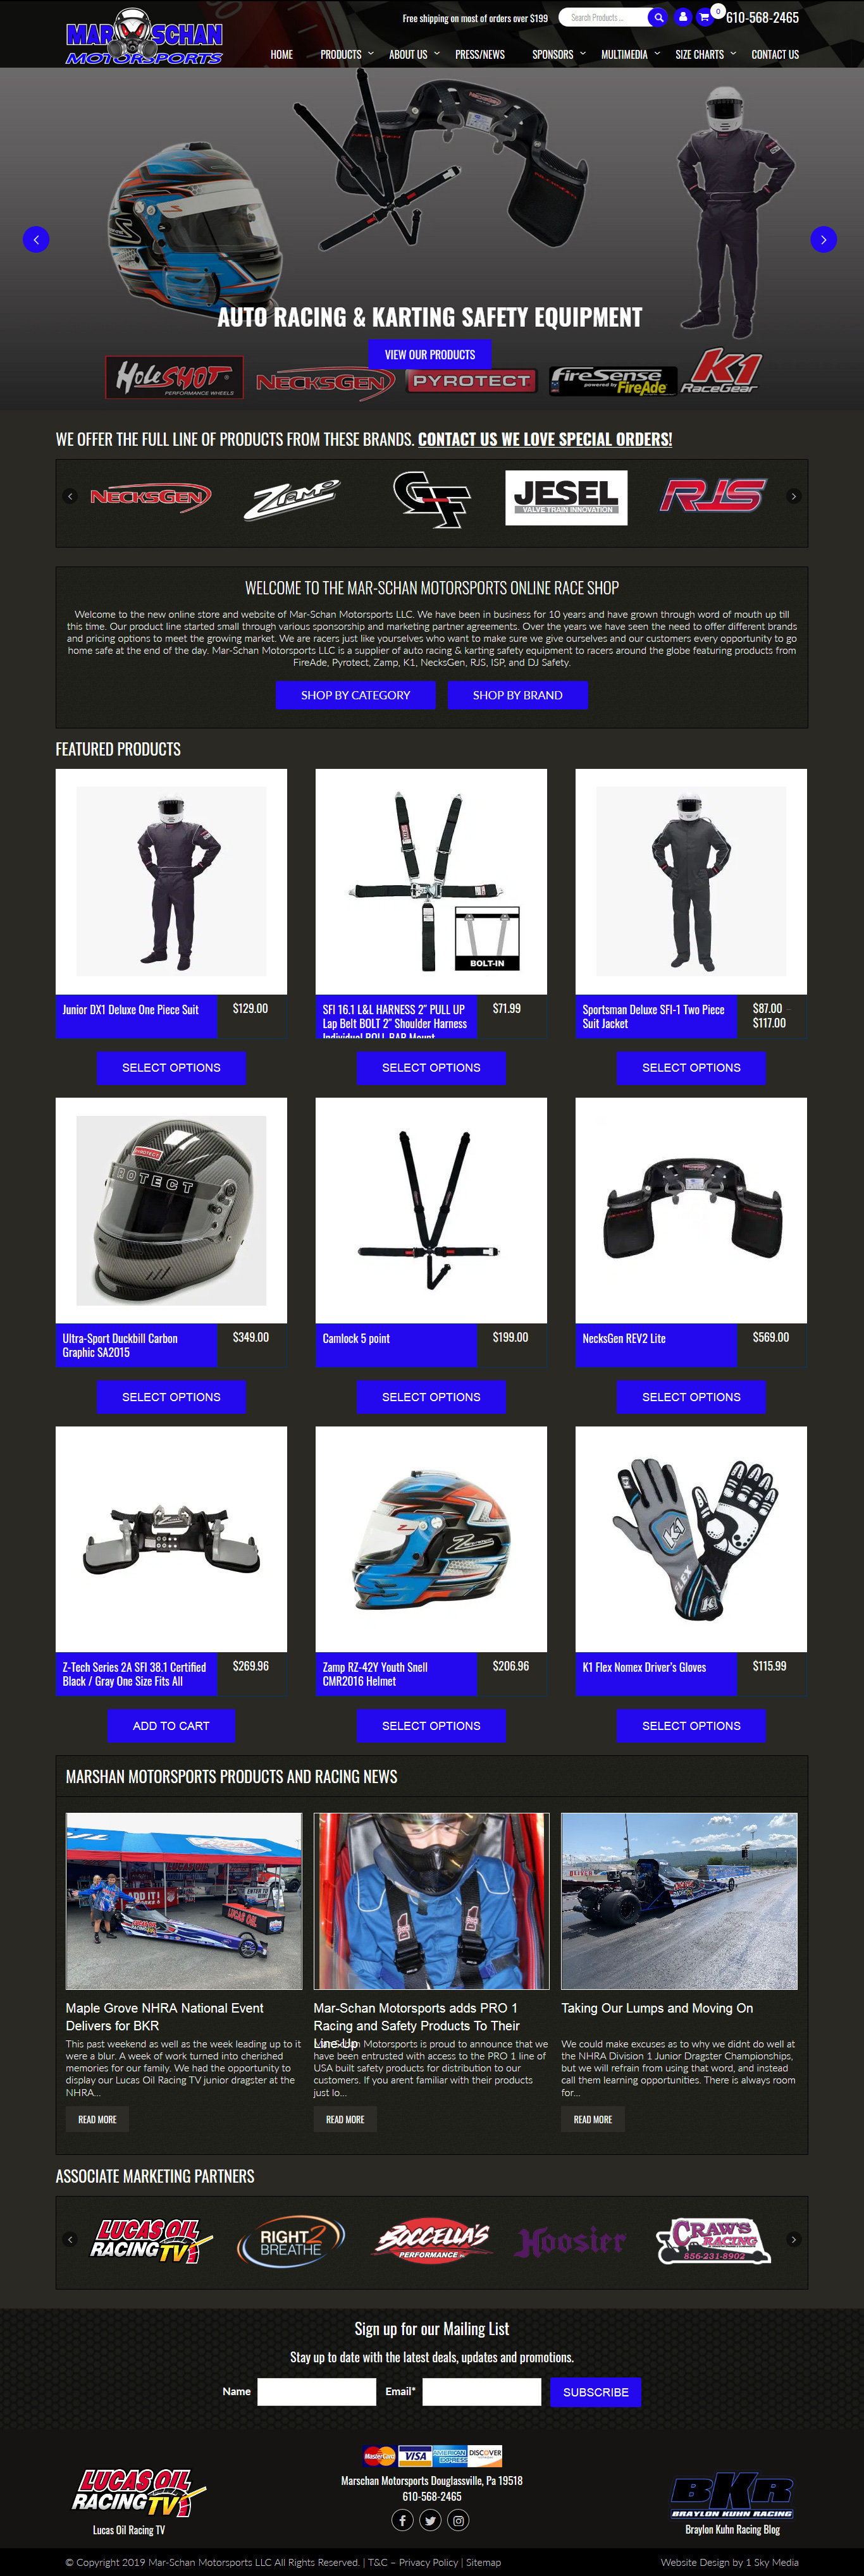 Mar-Schan Motorsports racing safety equipment retailer website design 